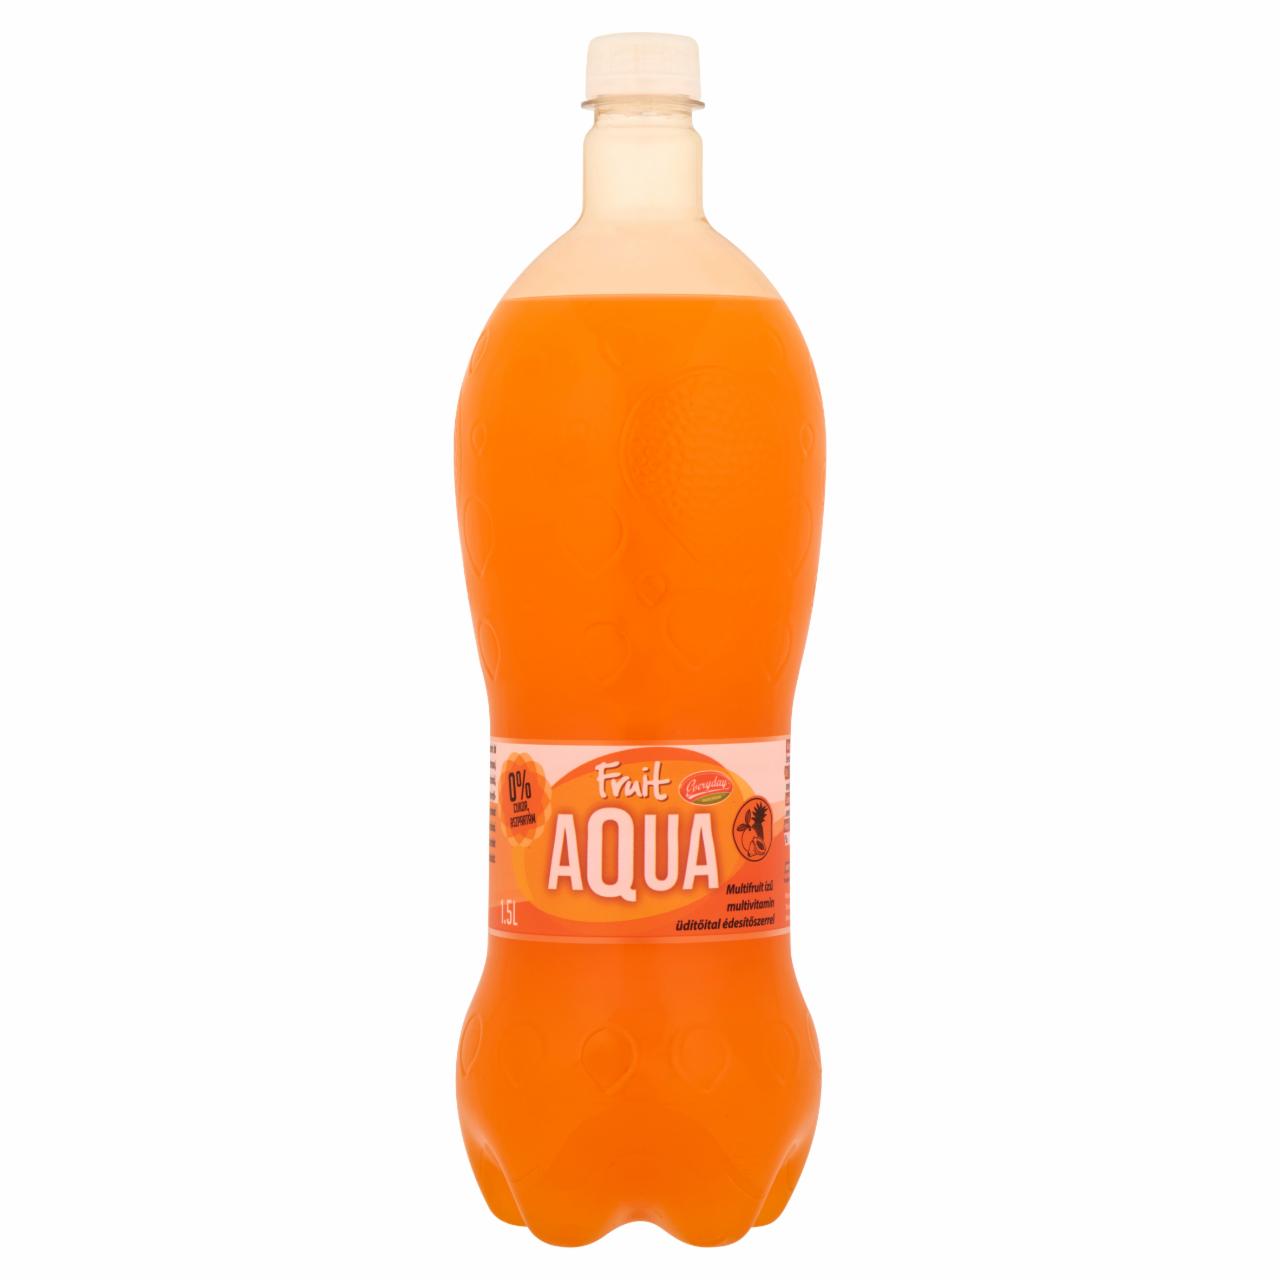 Képek - Everyday Fruit Aqua multifruit ízű multivitamin üdítőital édesítőszerrel 1,5 l